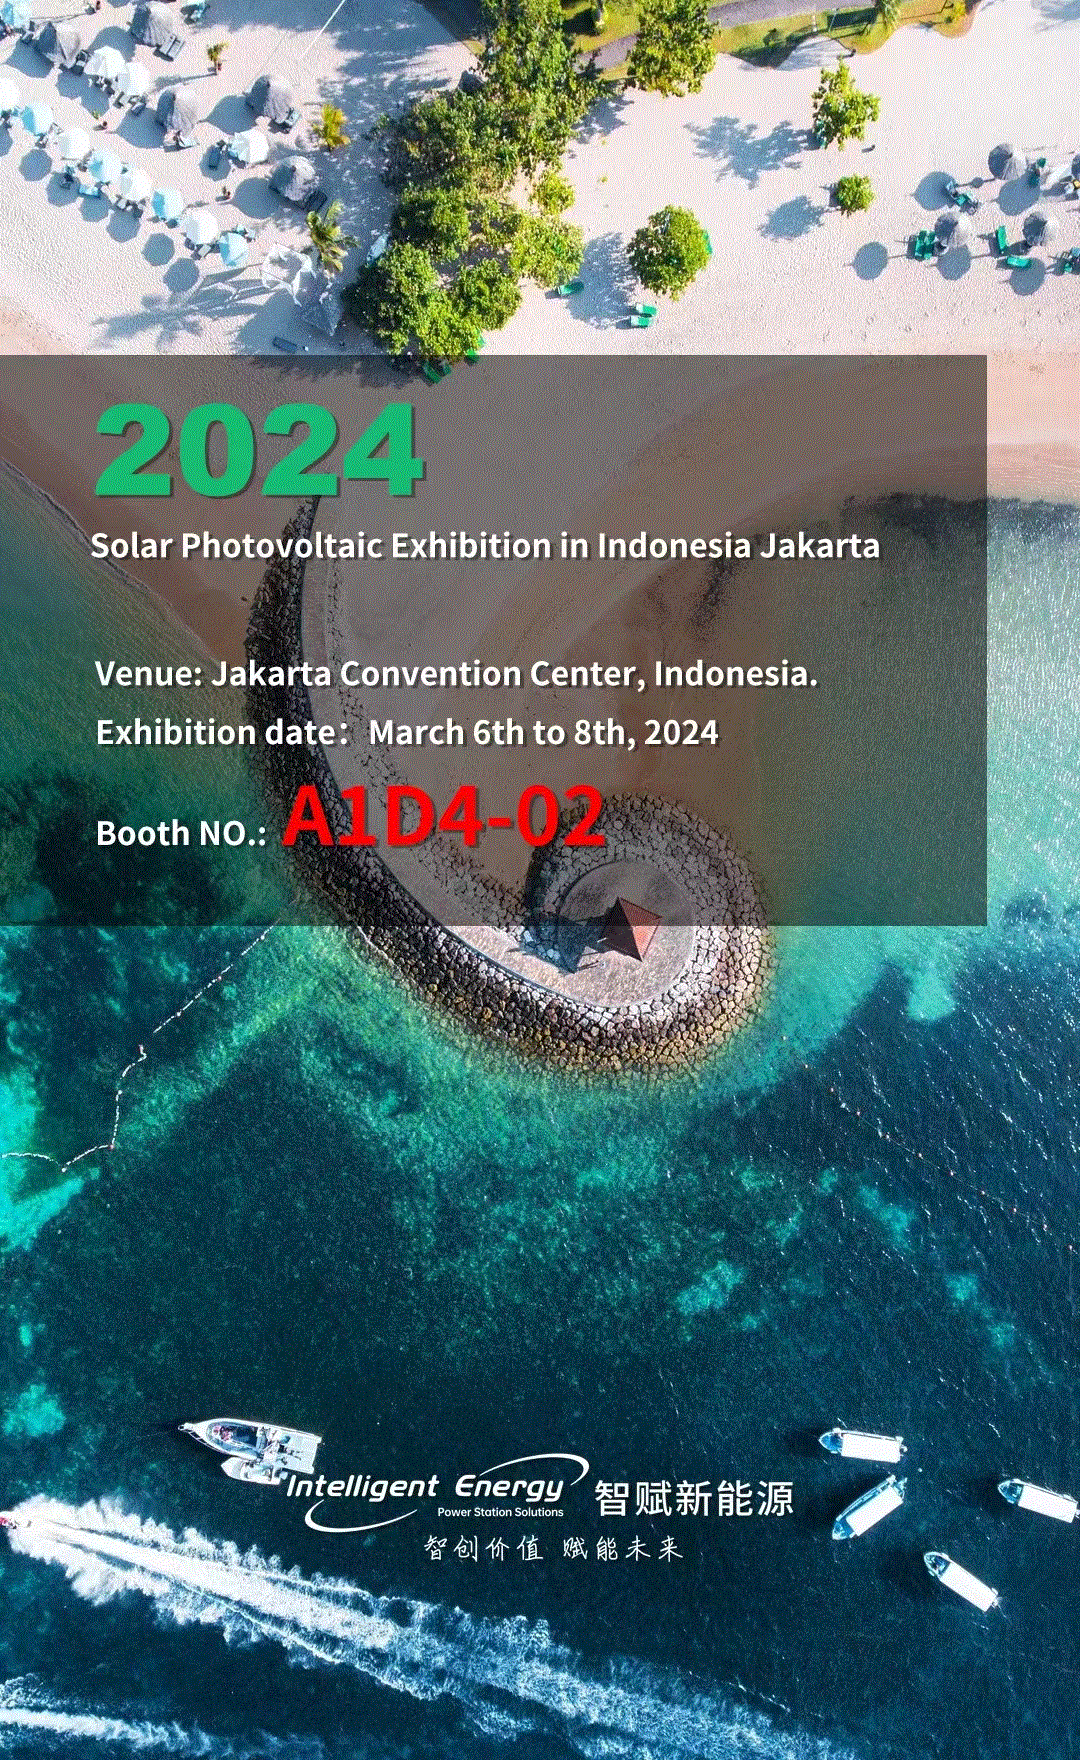 Exposition solaire photovoltaïque 2024 en Indonésie à Jakarta